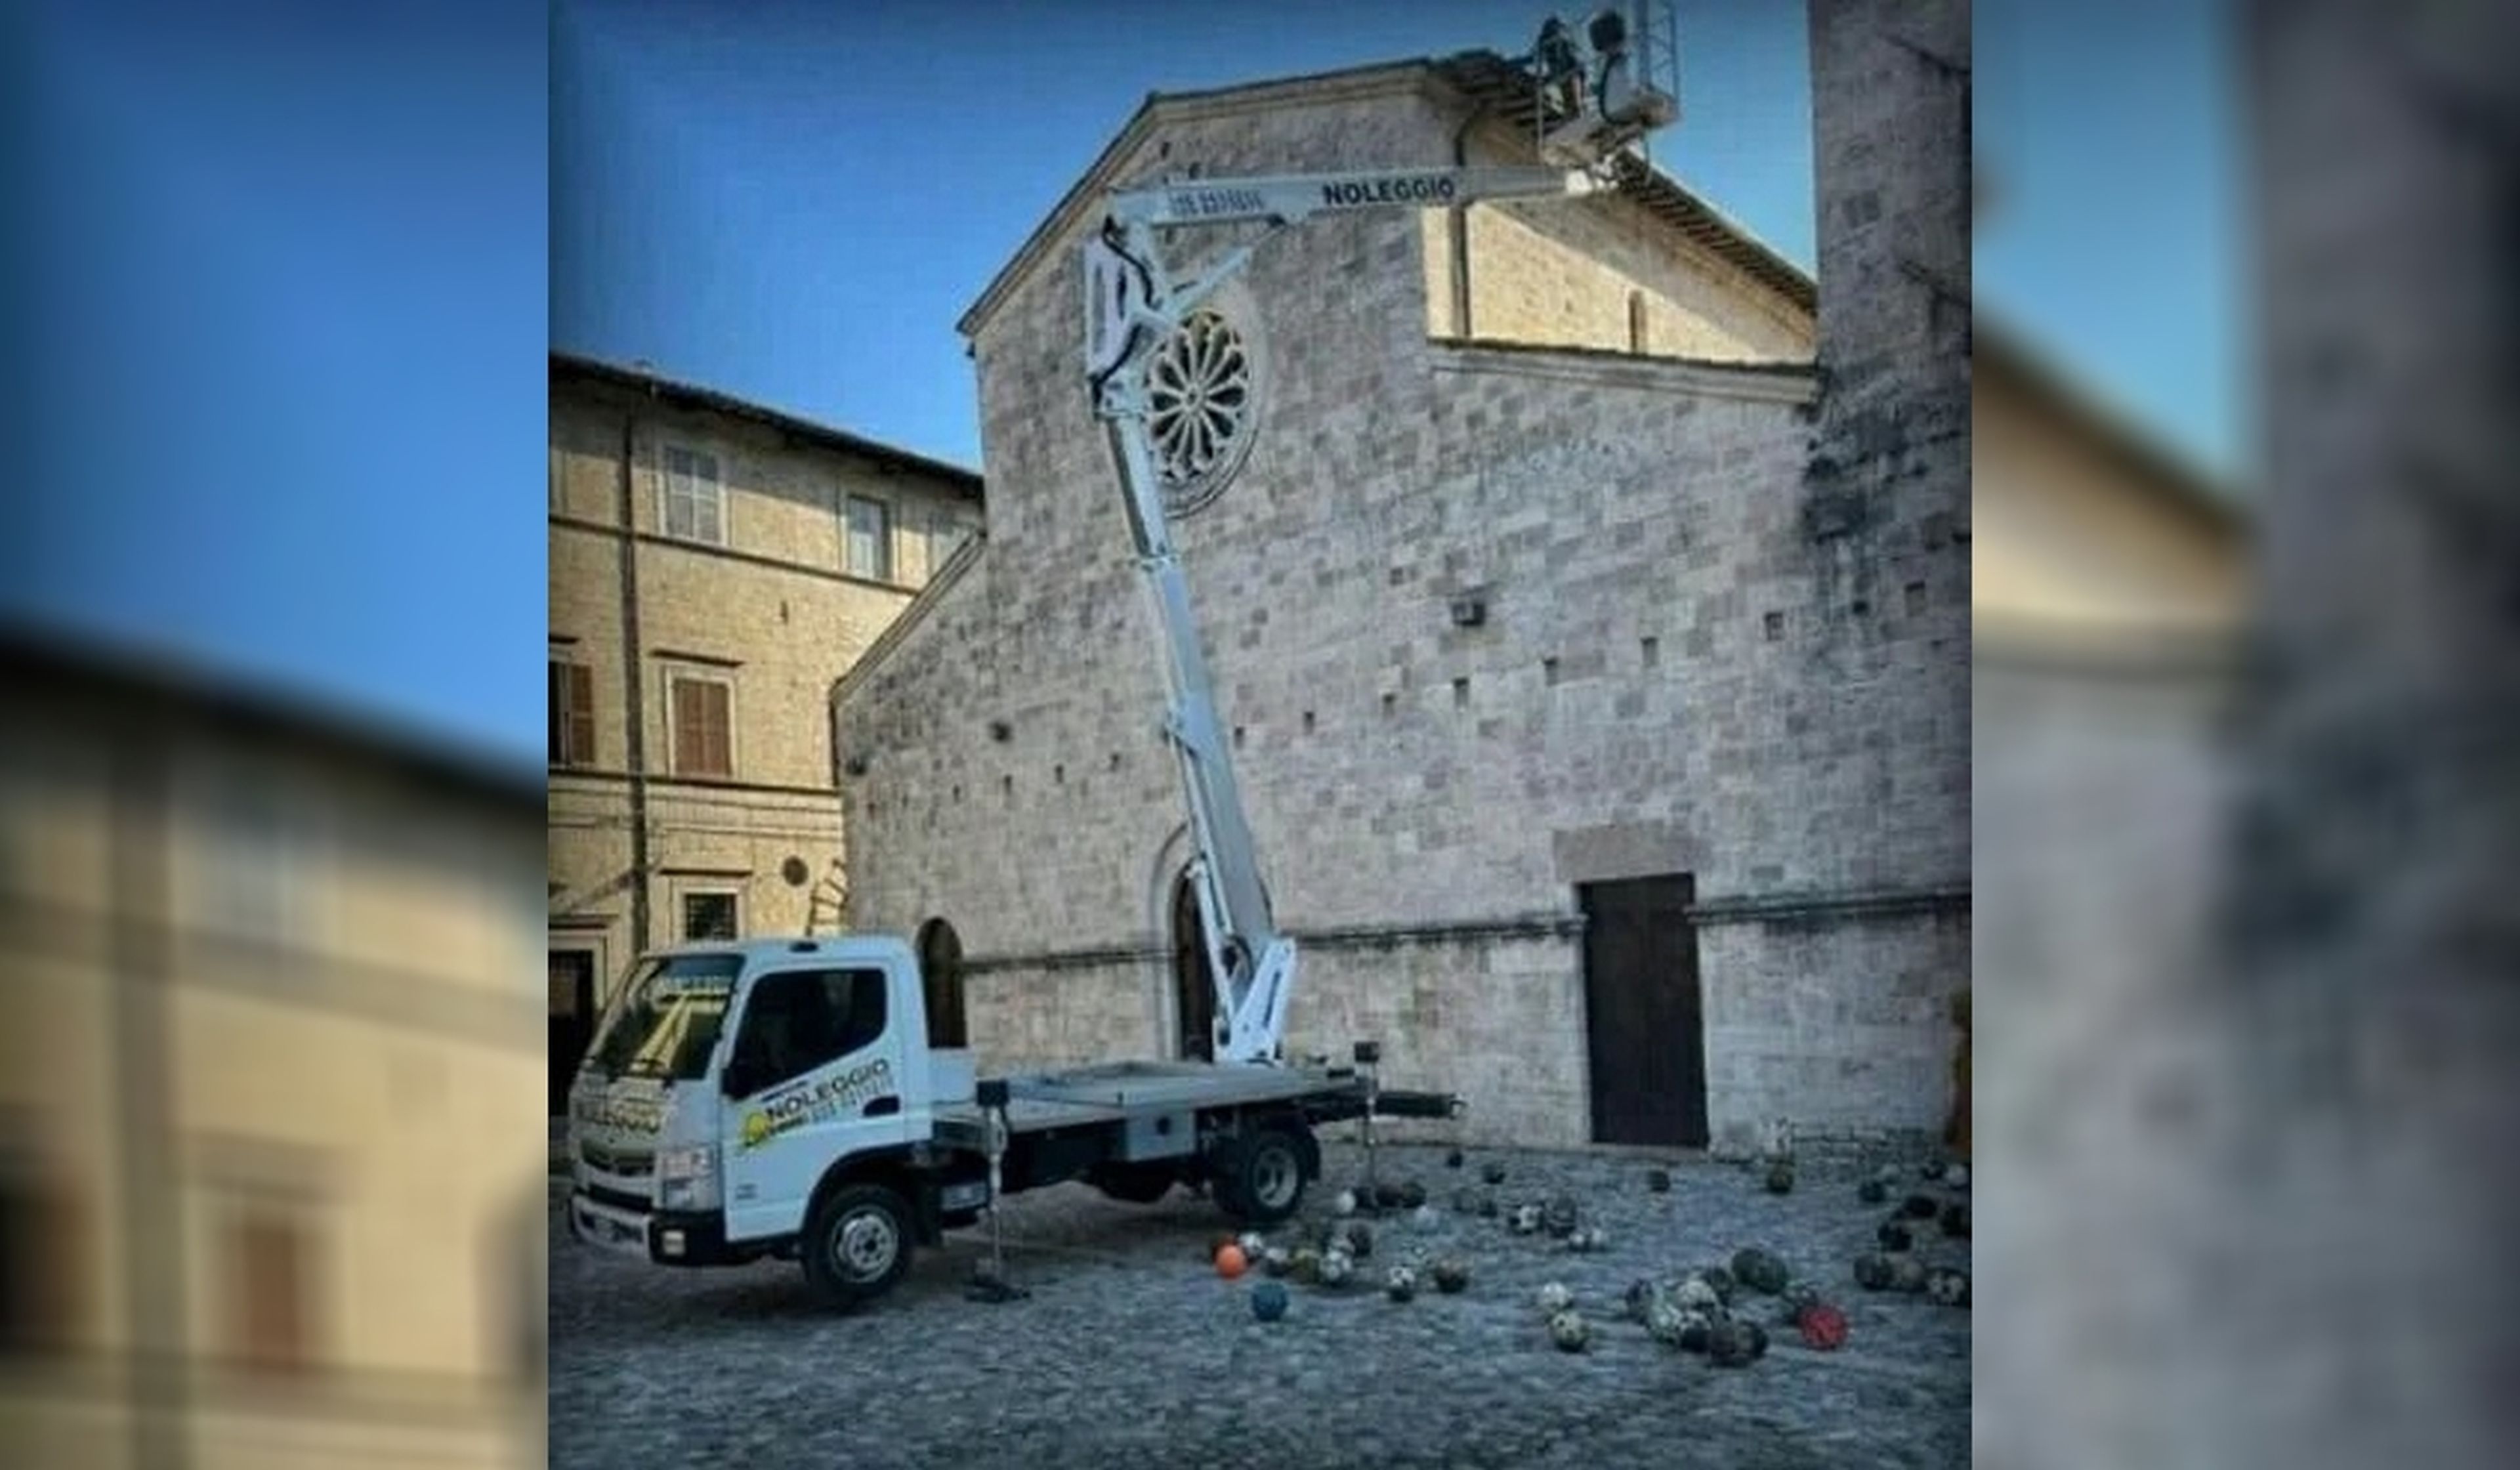 Arreglan el tejado de una iglesia italiana y encuentran docenas de balones que llevaban encajados desde el Mundial 78